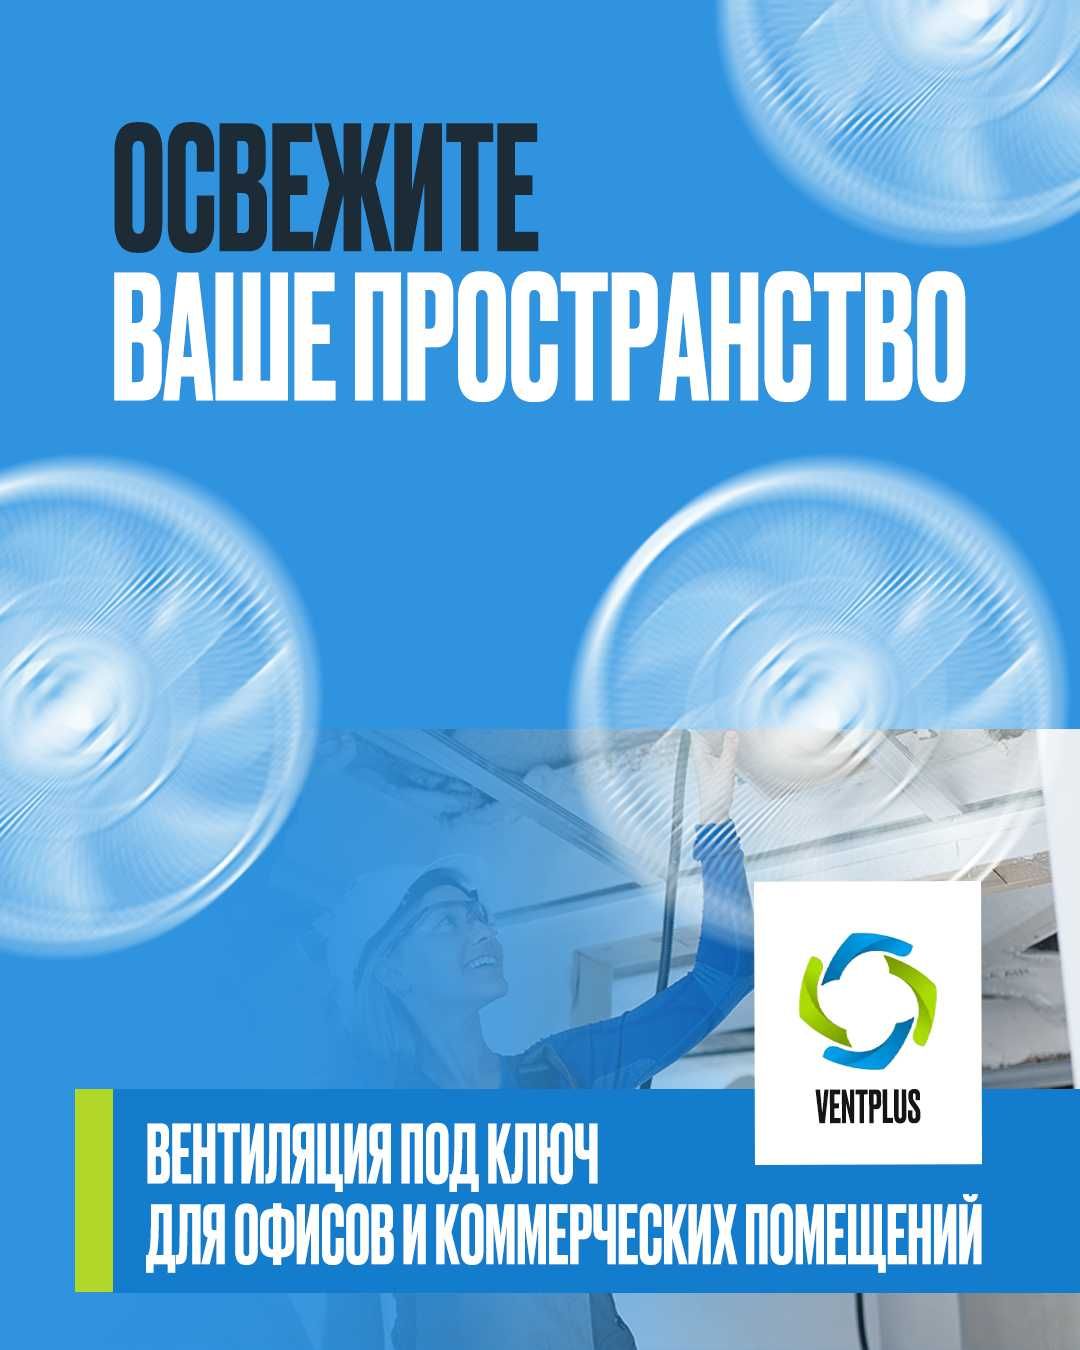 Вентиляция для вашего бизнеса/коммерческих объектов Астана